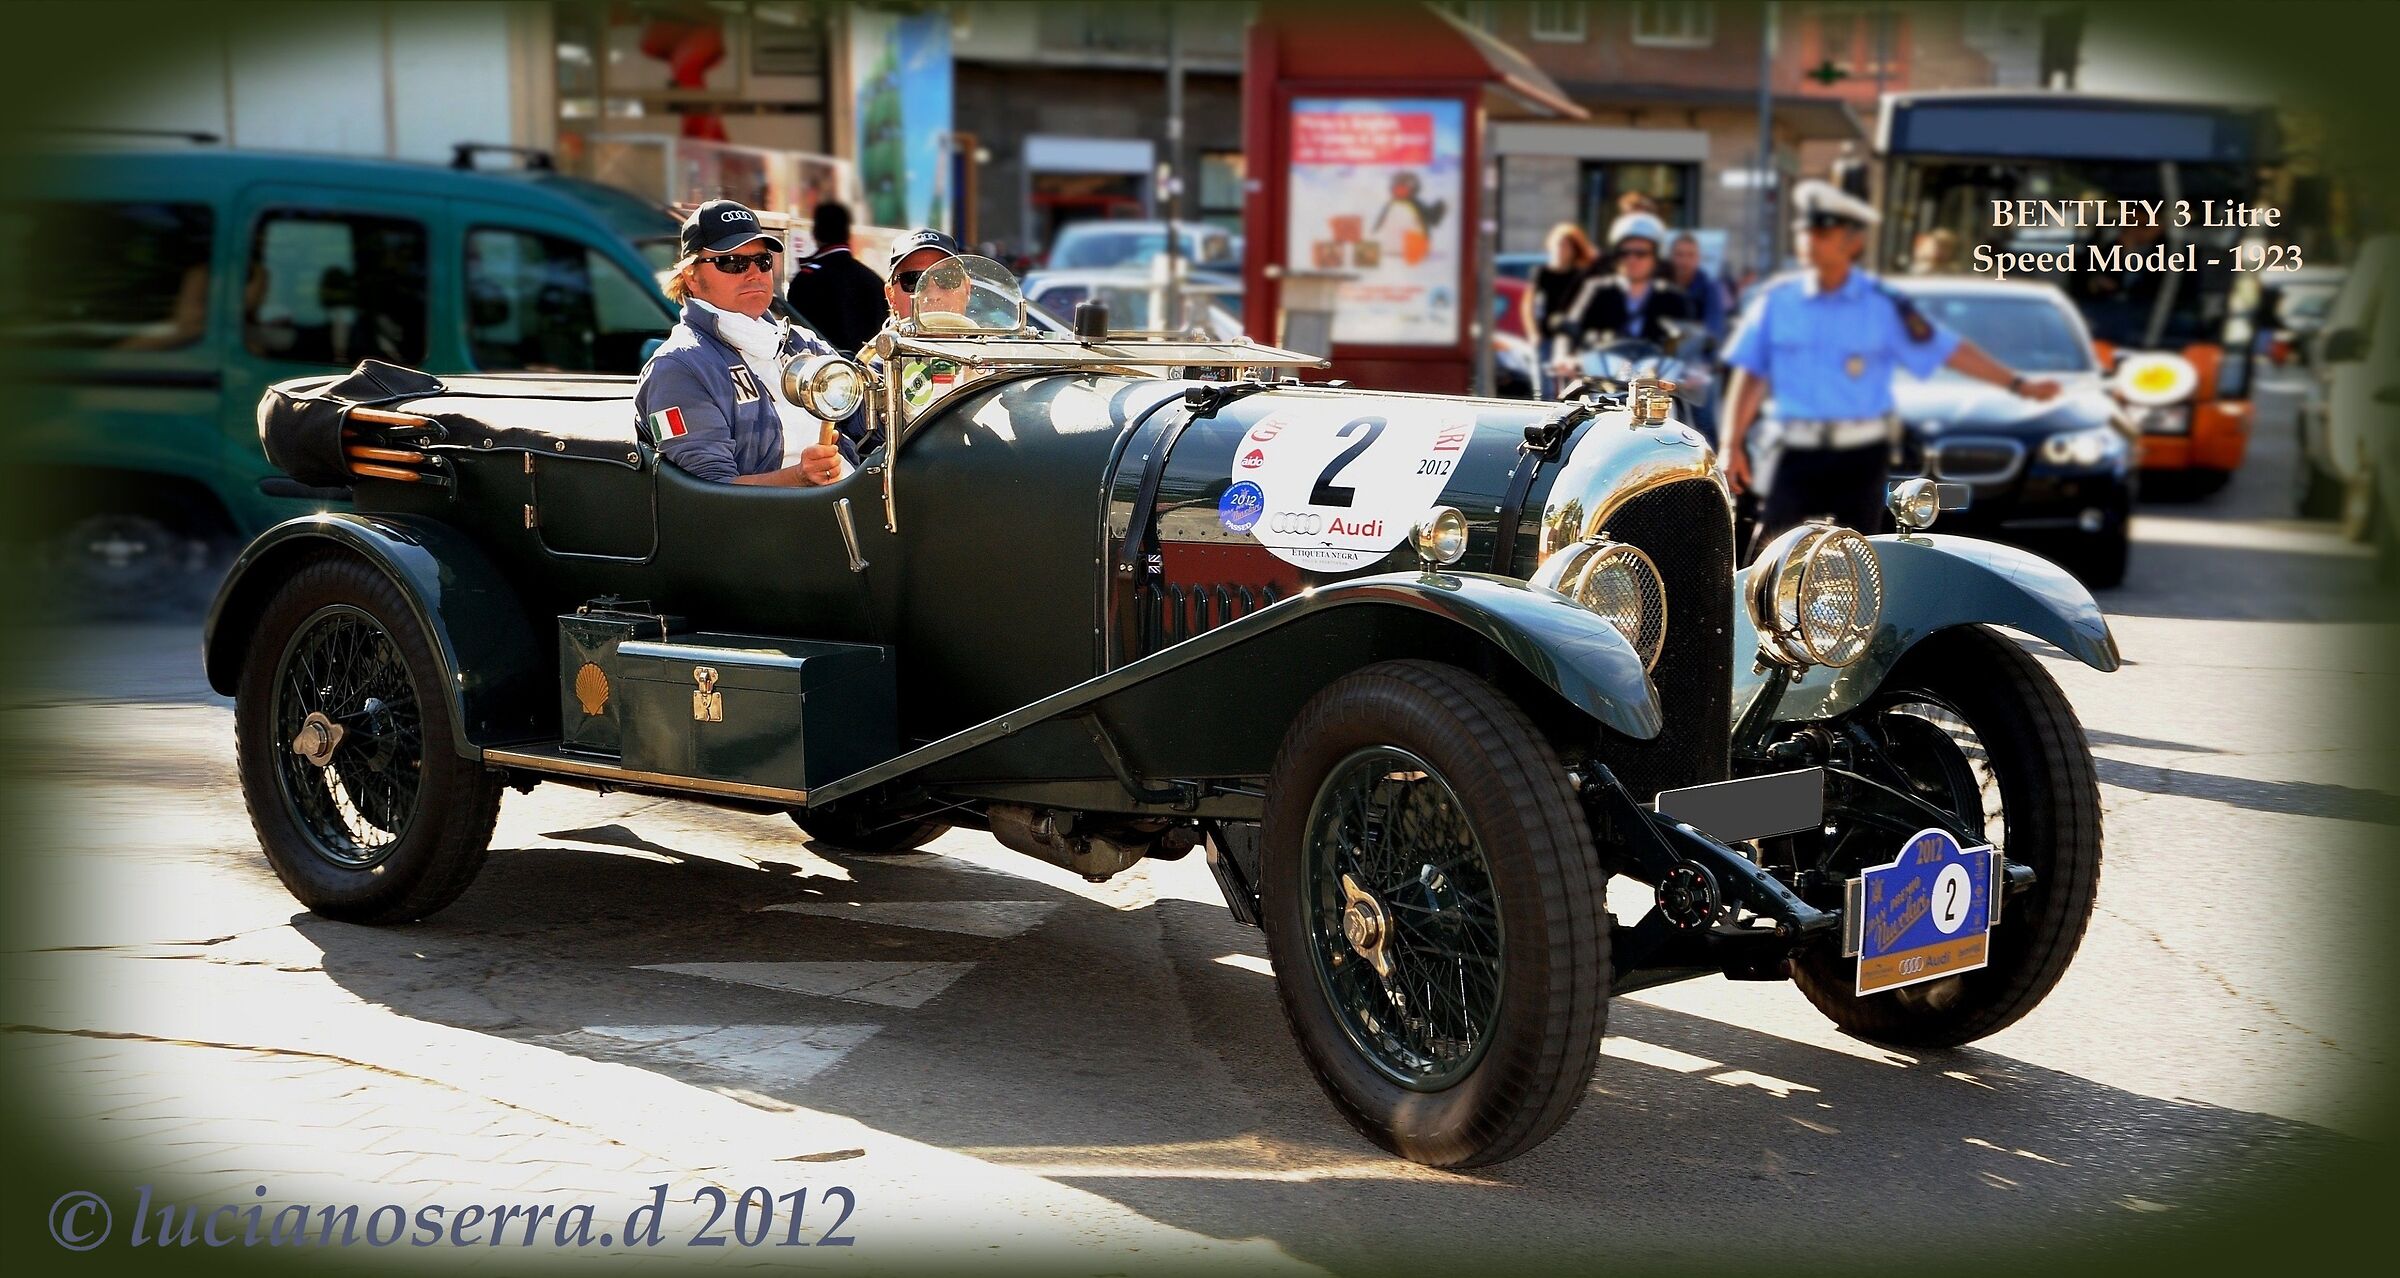 Bentley 3 Litre Speed Model - 1923...